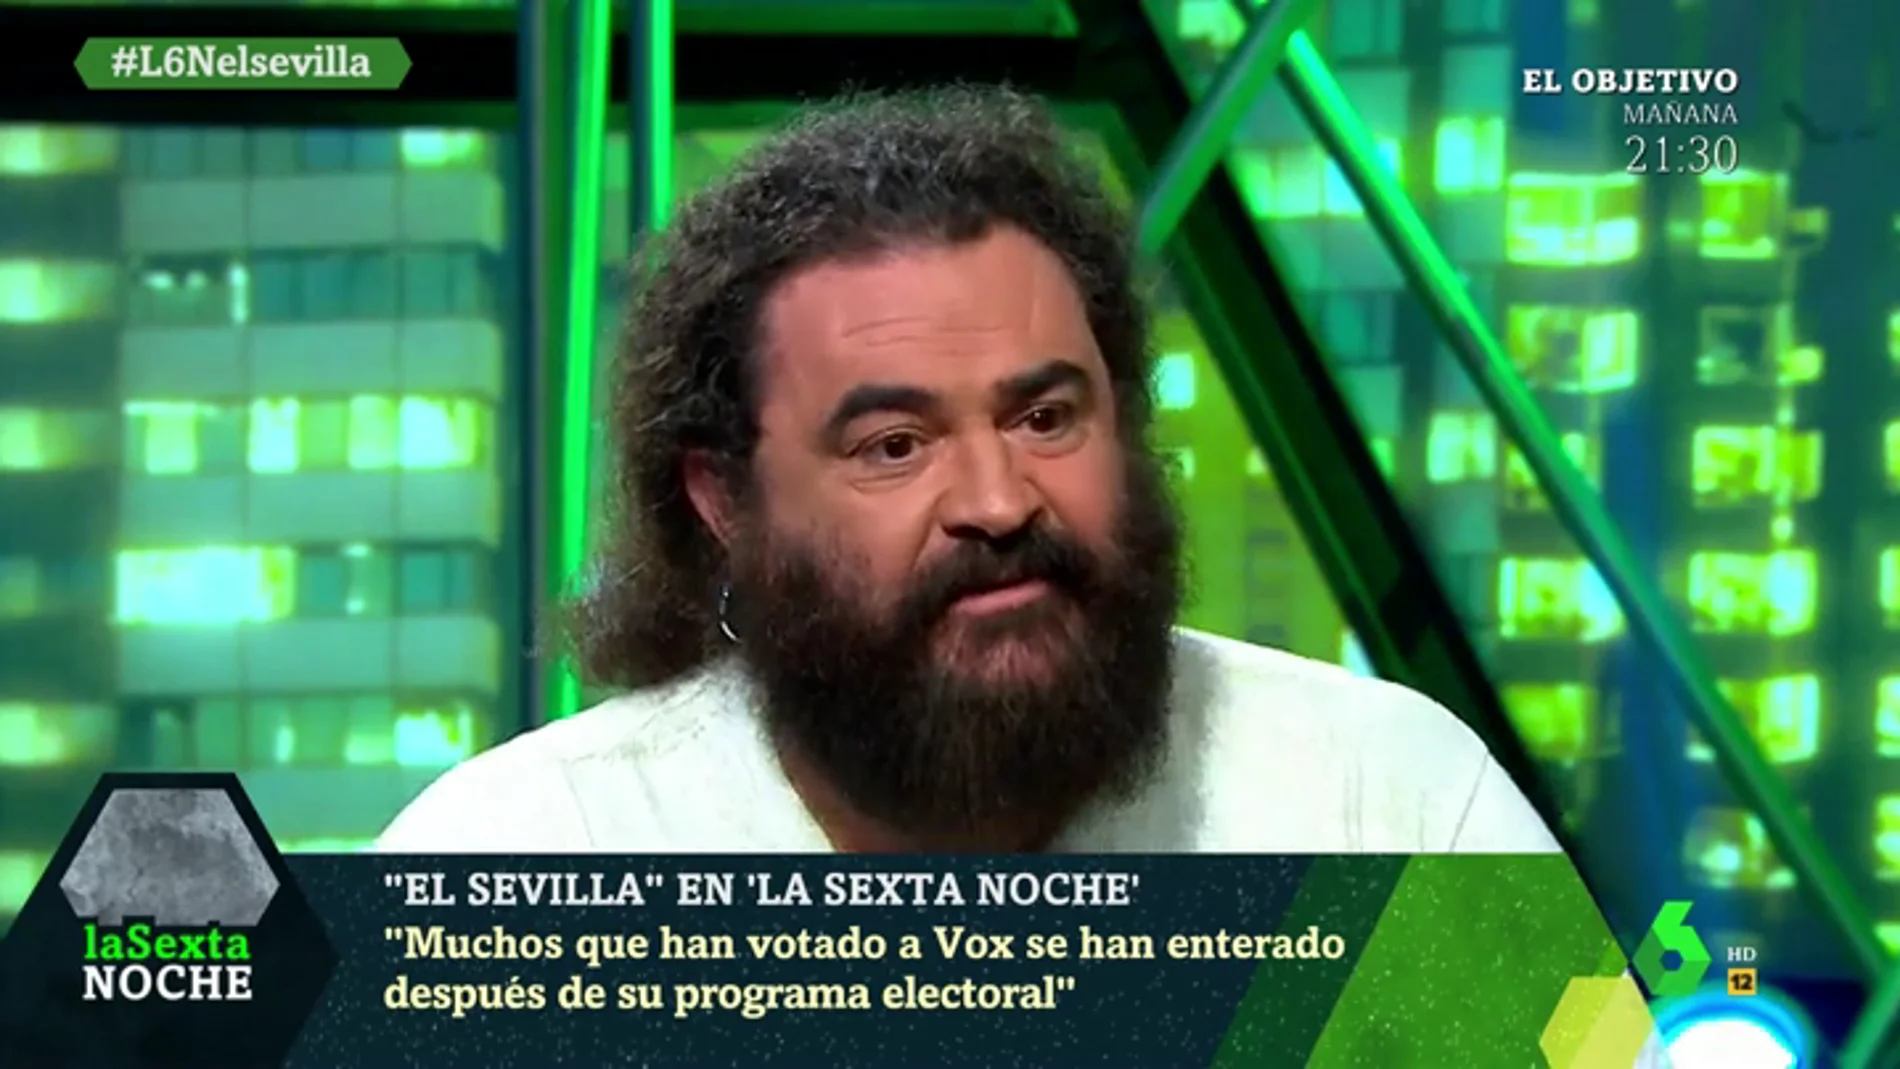 El análisis de El Sevilla sobre el auge de Vox: "Conozco a gente de izquierdas que les ha votado"